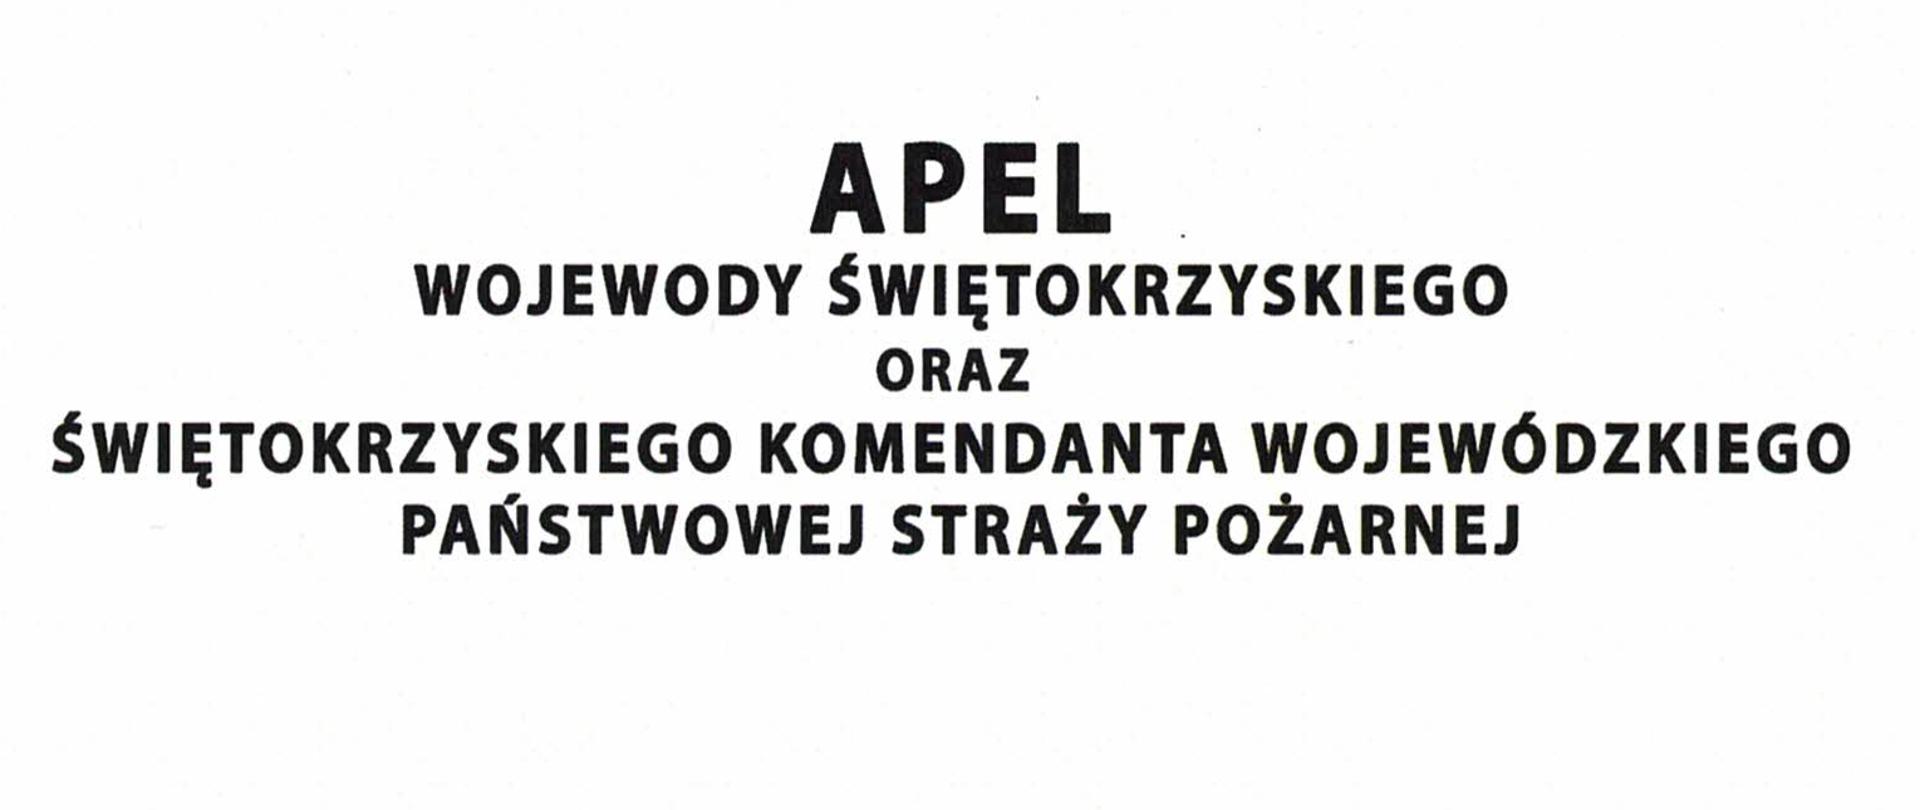 Apel Wojewody Świętokrzyskiego oraz Świętokrzyskiego Komendanta Wojewódzkiego PSP